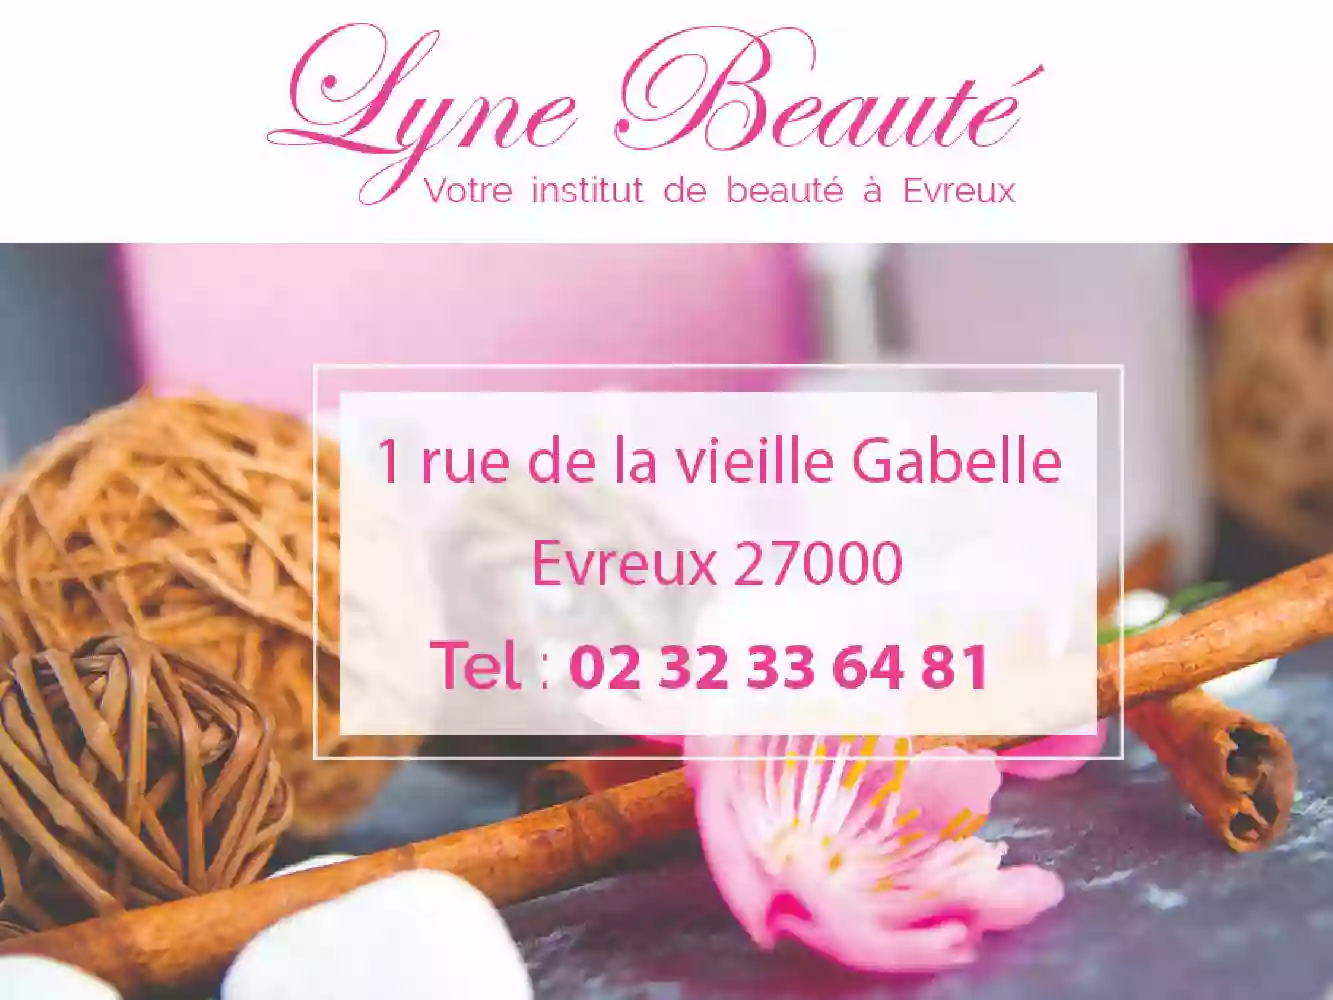 Lyne beauté - institut de beauté Maria Galland à Evreux